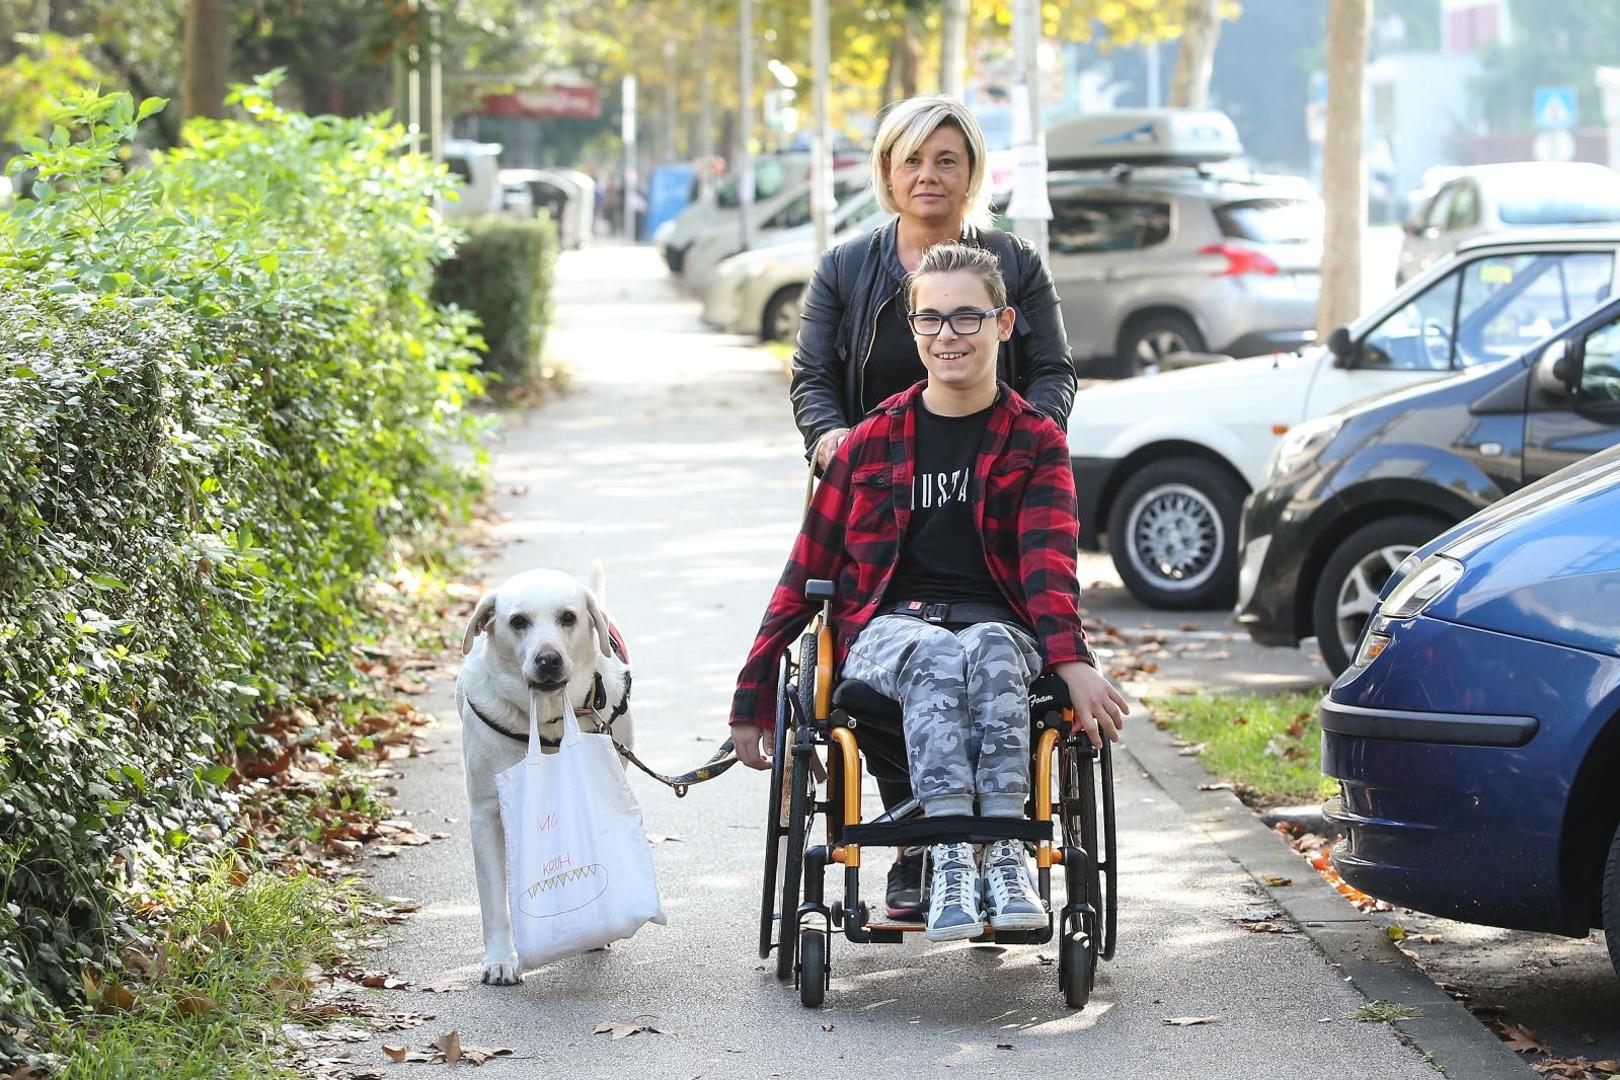 Marko Tonković iz Zagreba ima cerebralnu paralizu, a labrador Urban mu je stalno pri ruci: majka Danijela kaže da im je Urban potpuno promijenio život